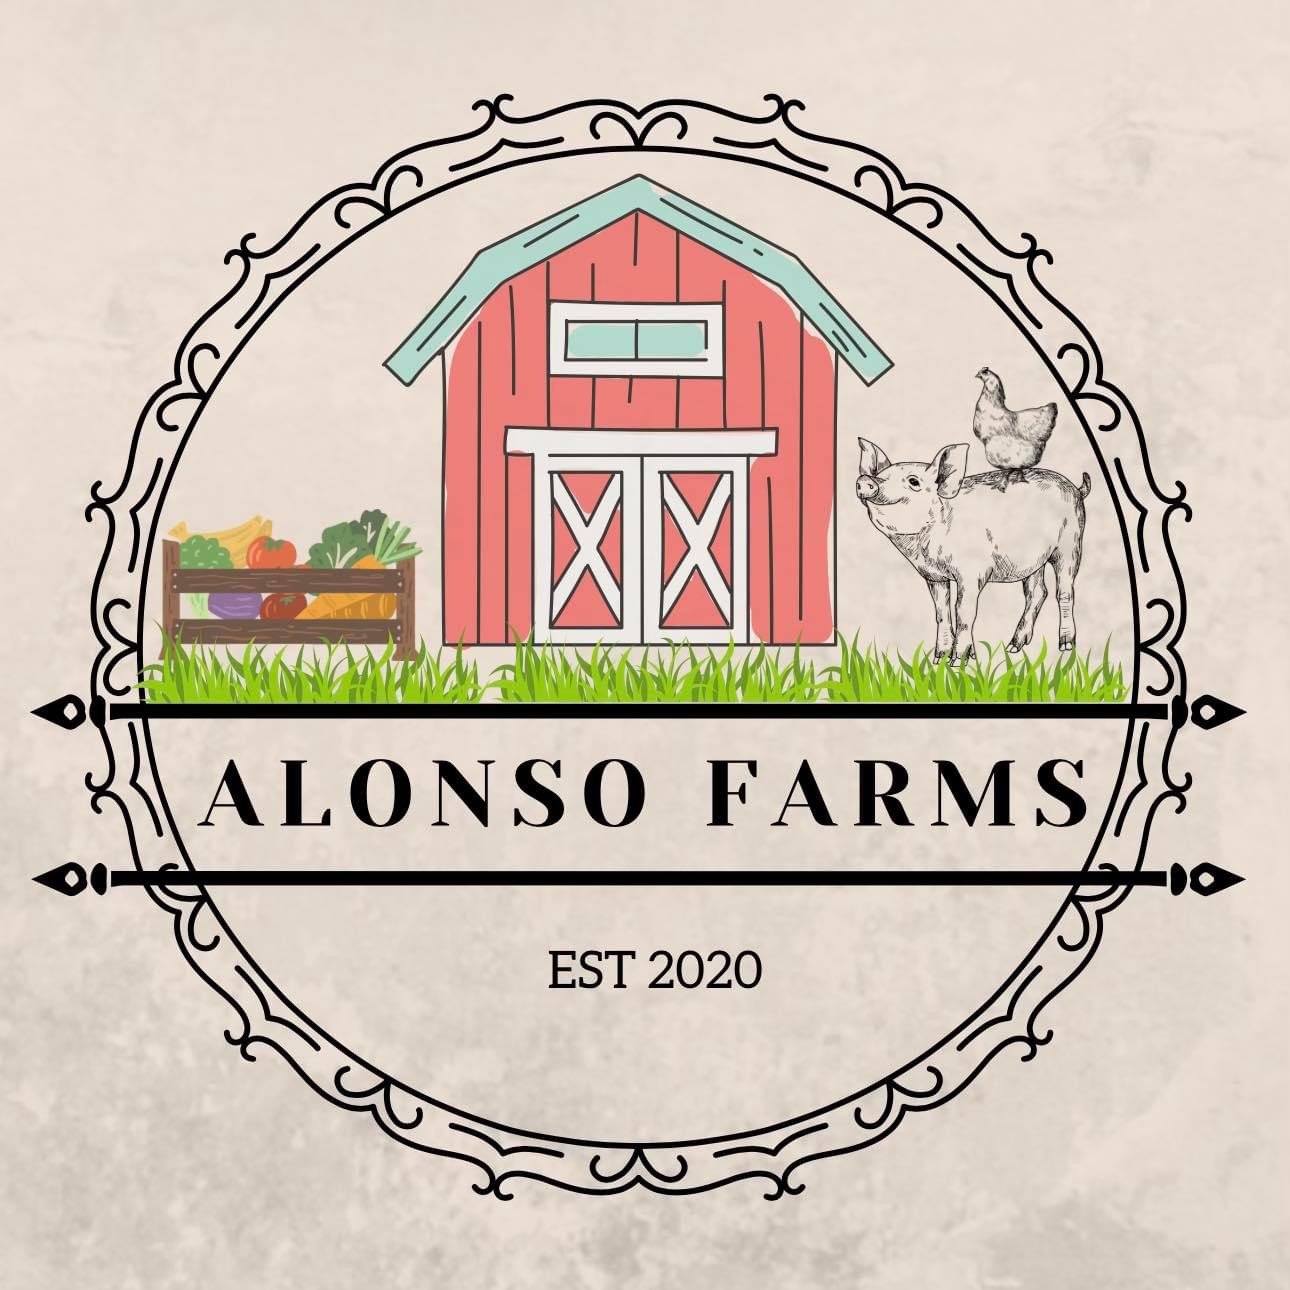 Alonso Farms